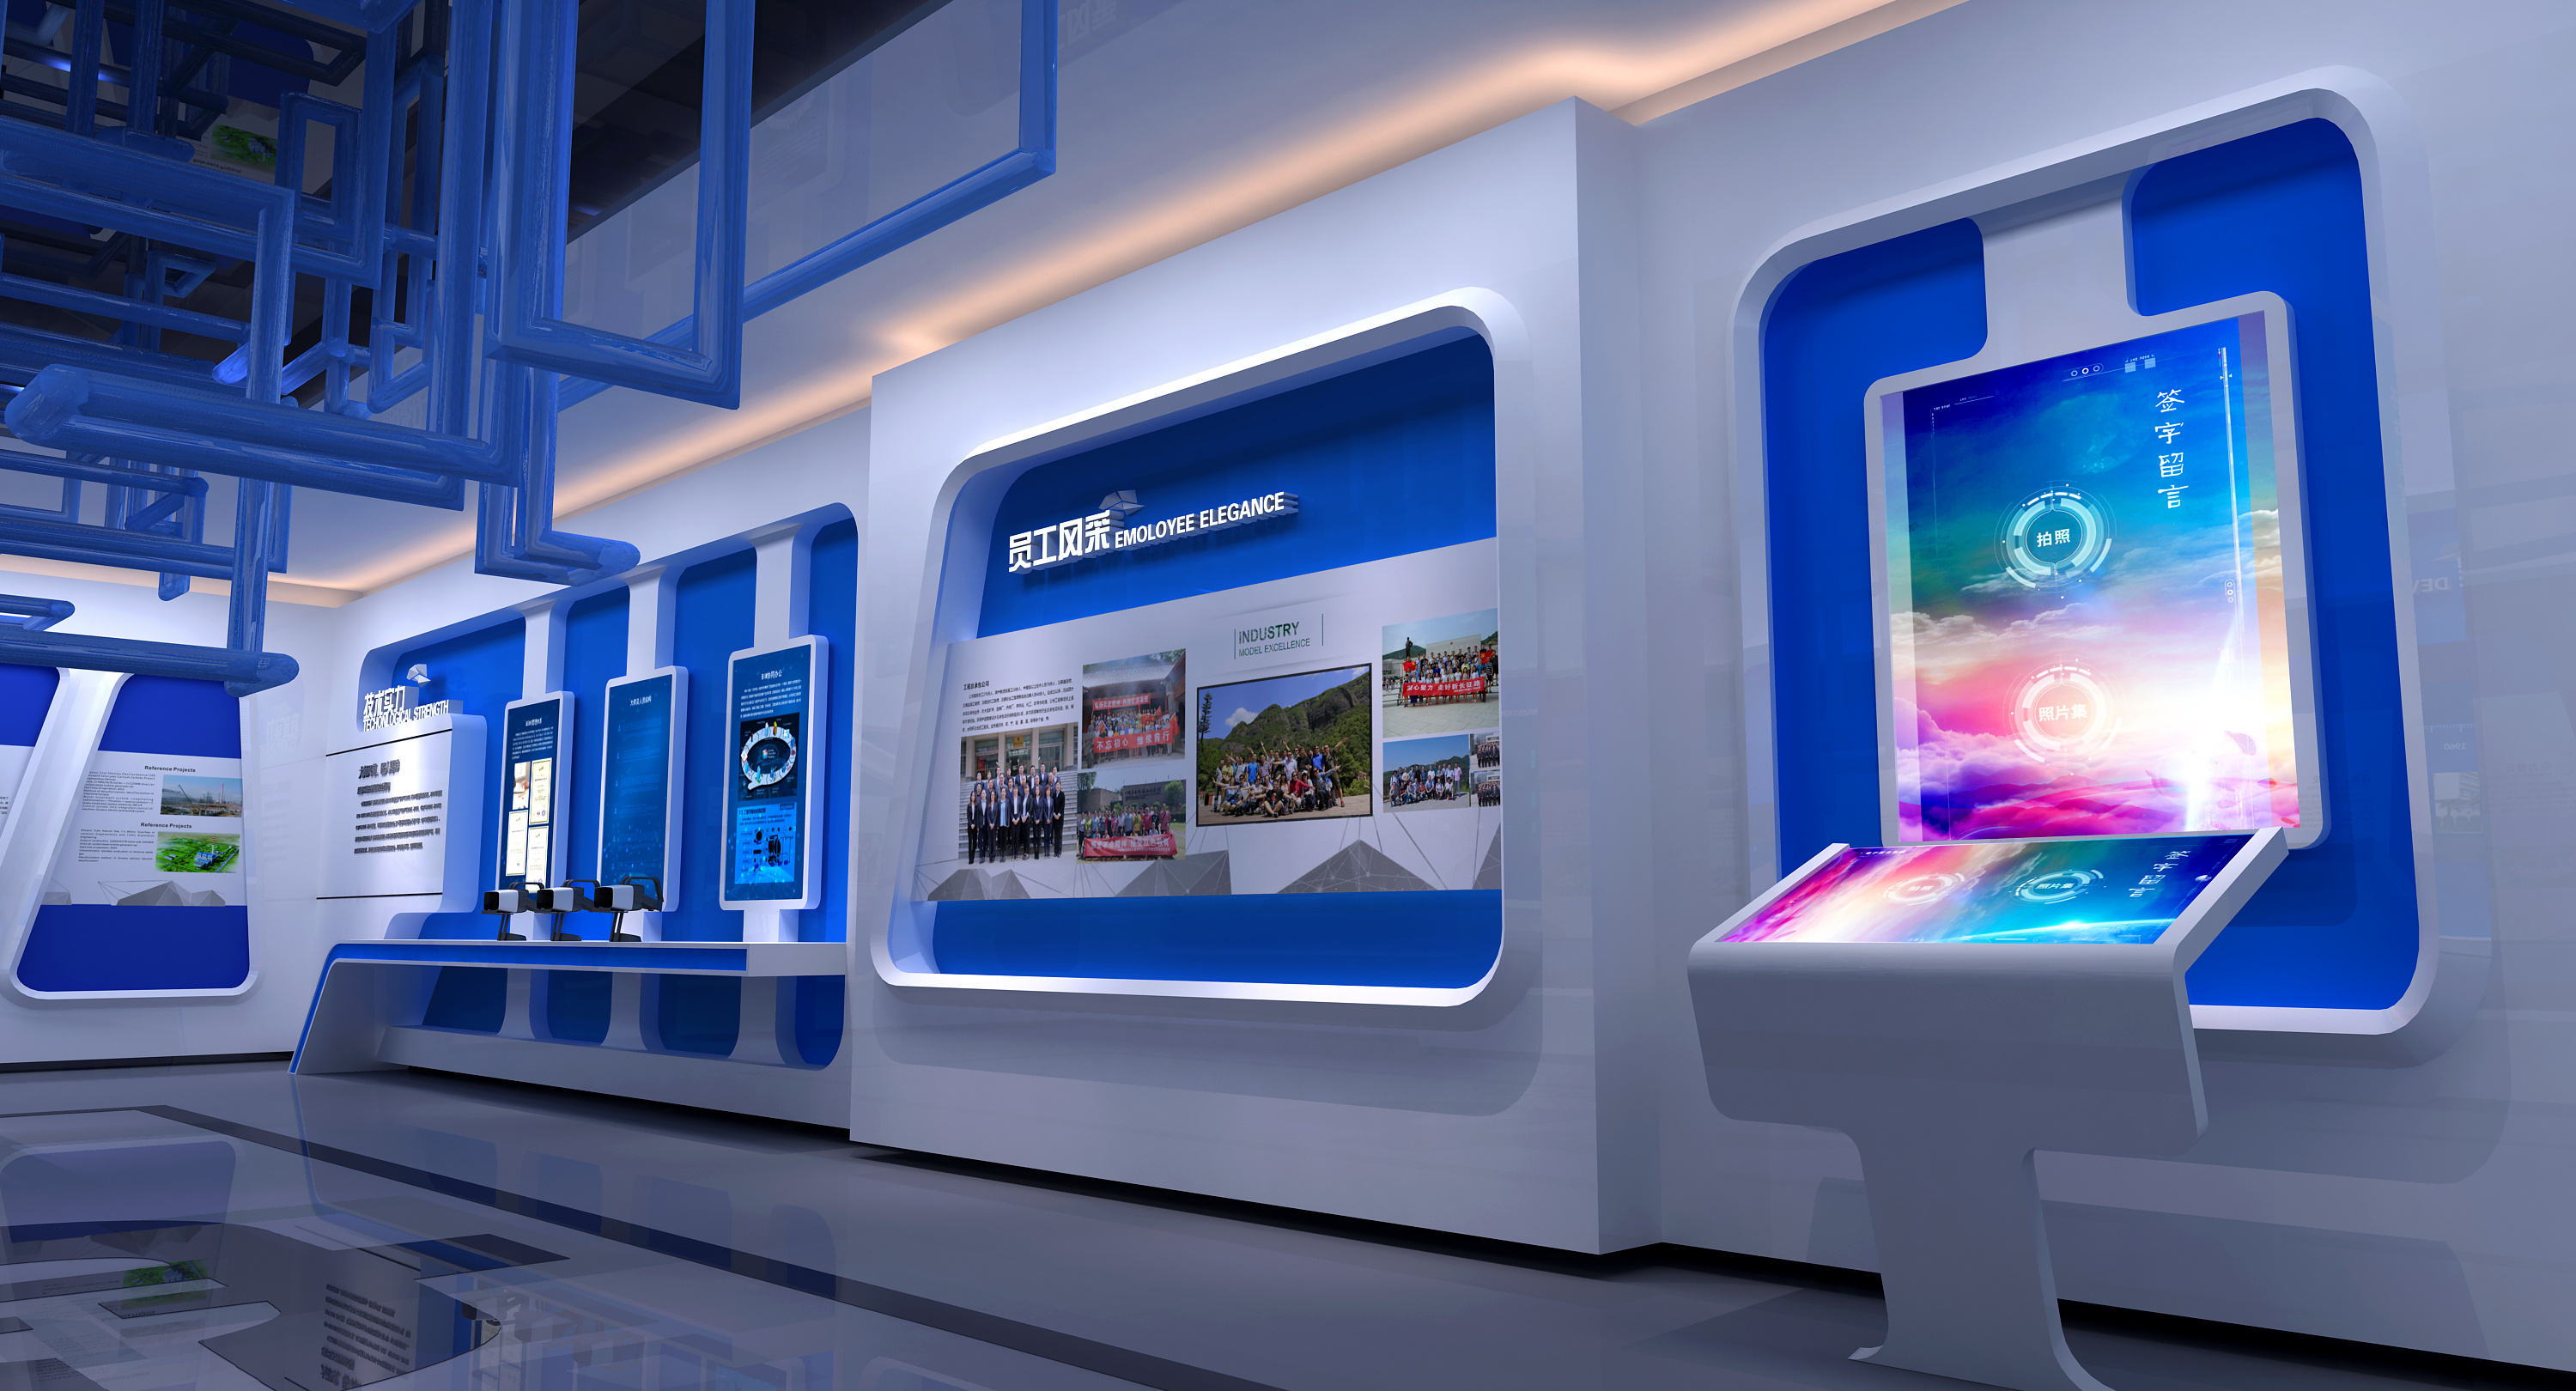 这是一张现代科技展览馆内部的图片，展示了蓝白色调的展台和互动屏幕，整体设计未来感十足。